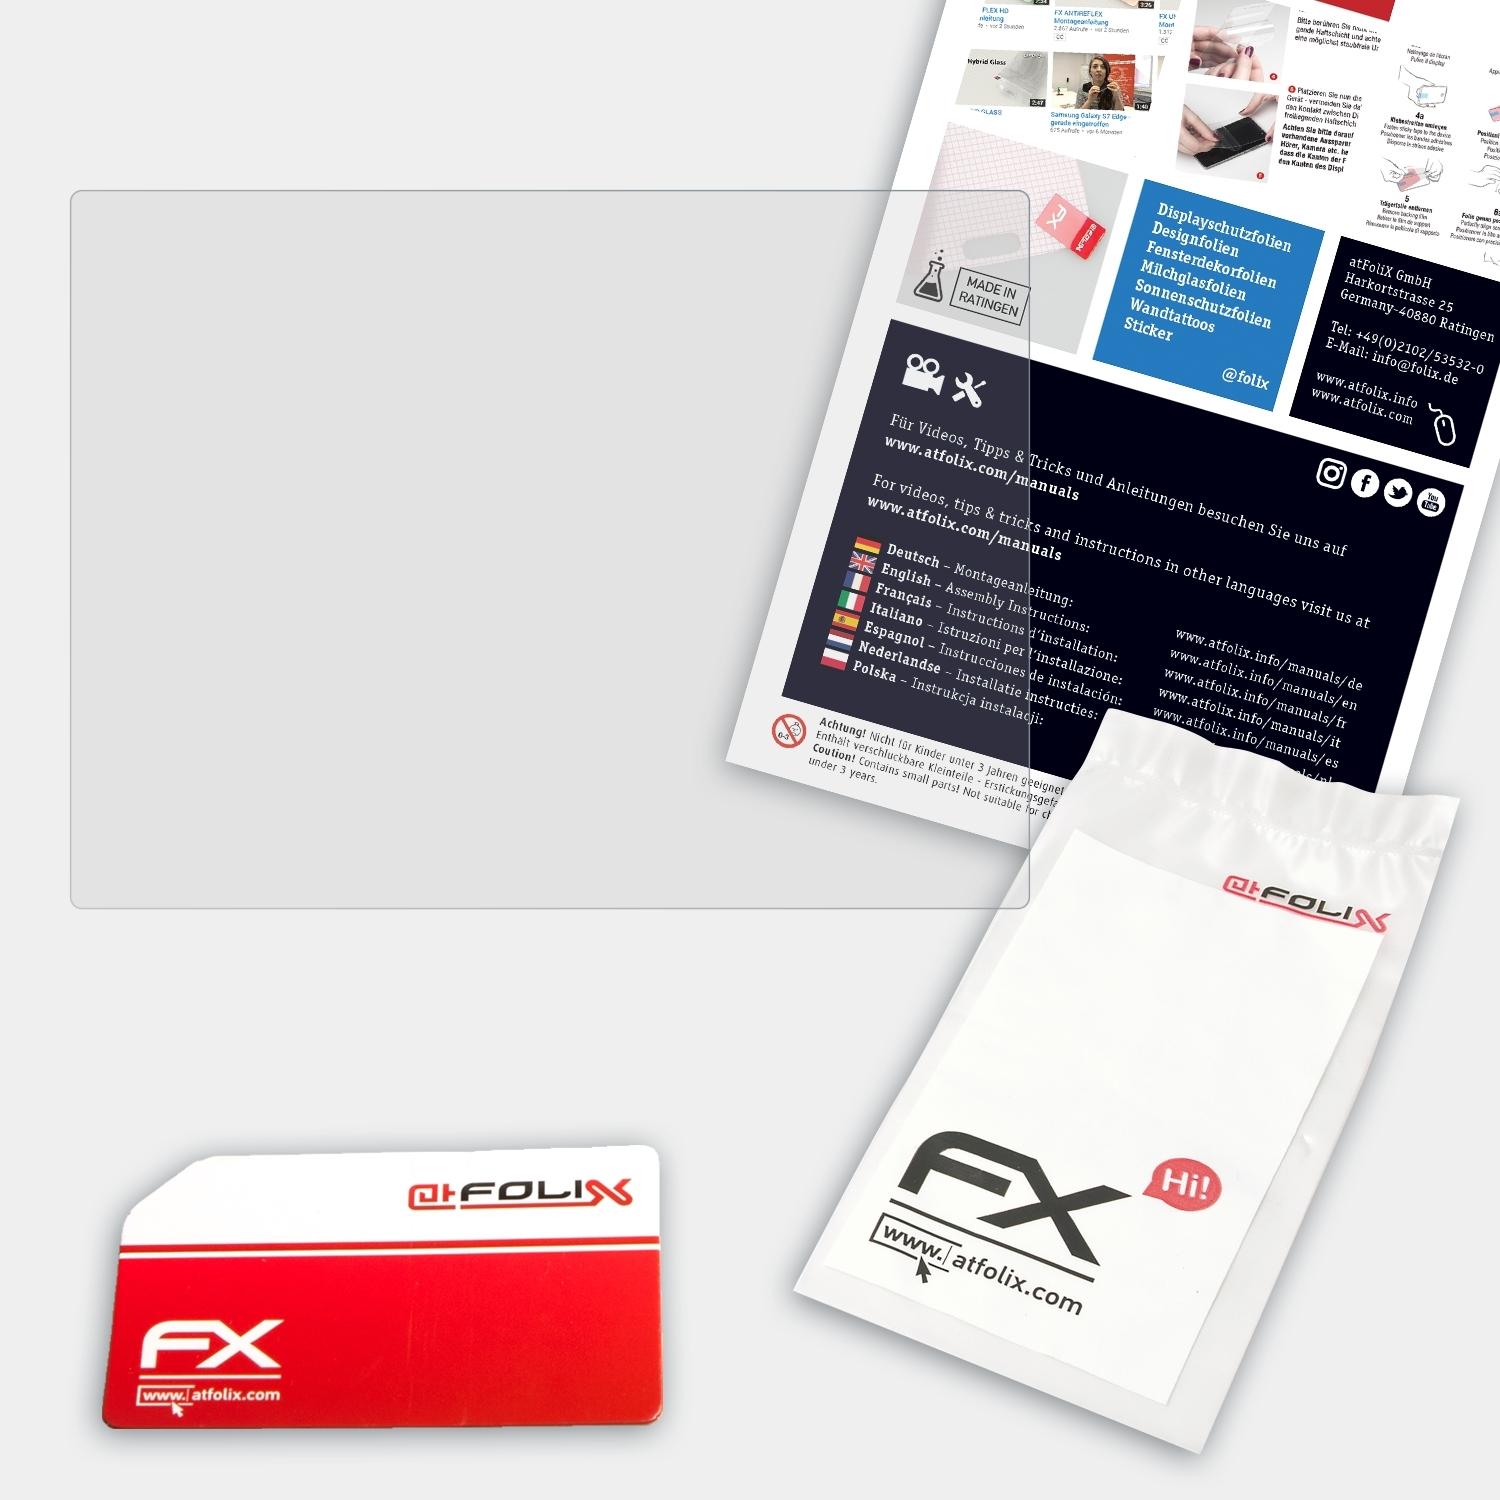 240 FX-Antireflex ATFOLIX PDF-S Displayschutz(für Rollei SE)